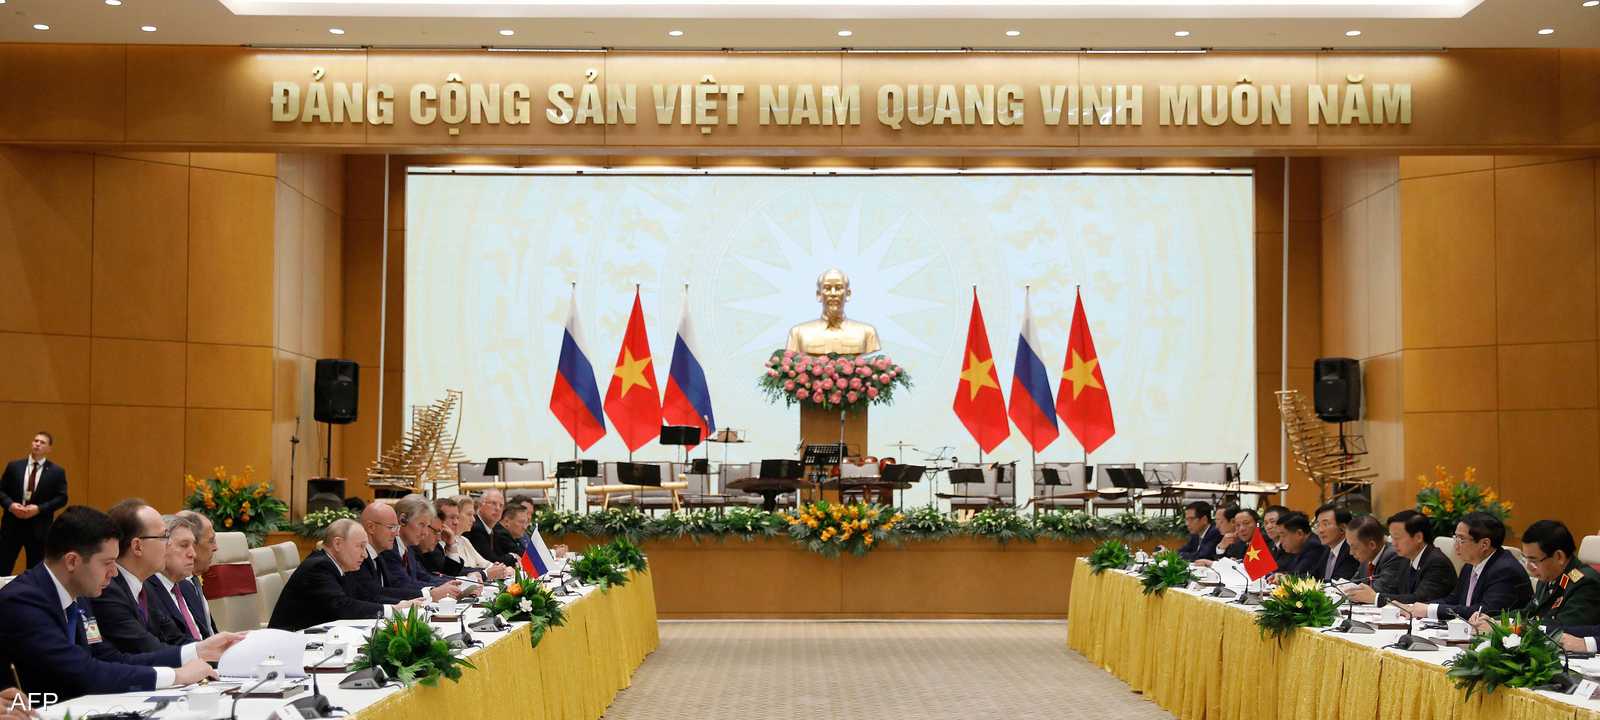 الرئيس الروسي في اجتماع مع رئيس الوزراء الفيتنامي